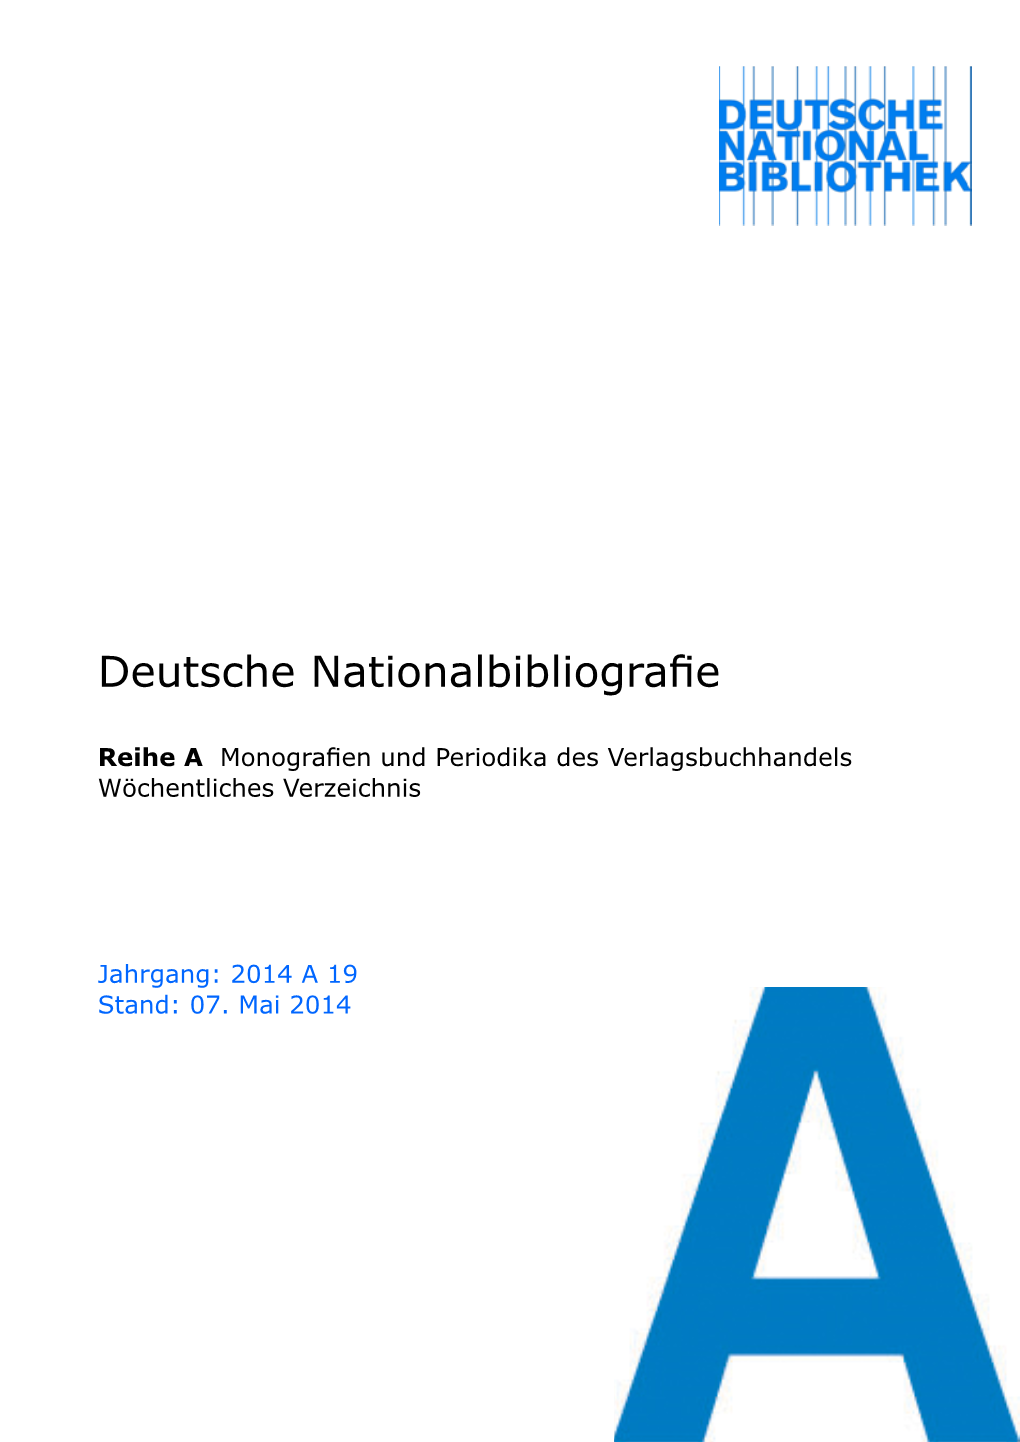 Deutsche Nationalbibliografie 2014 a 19